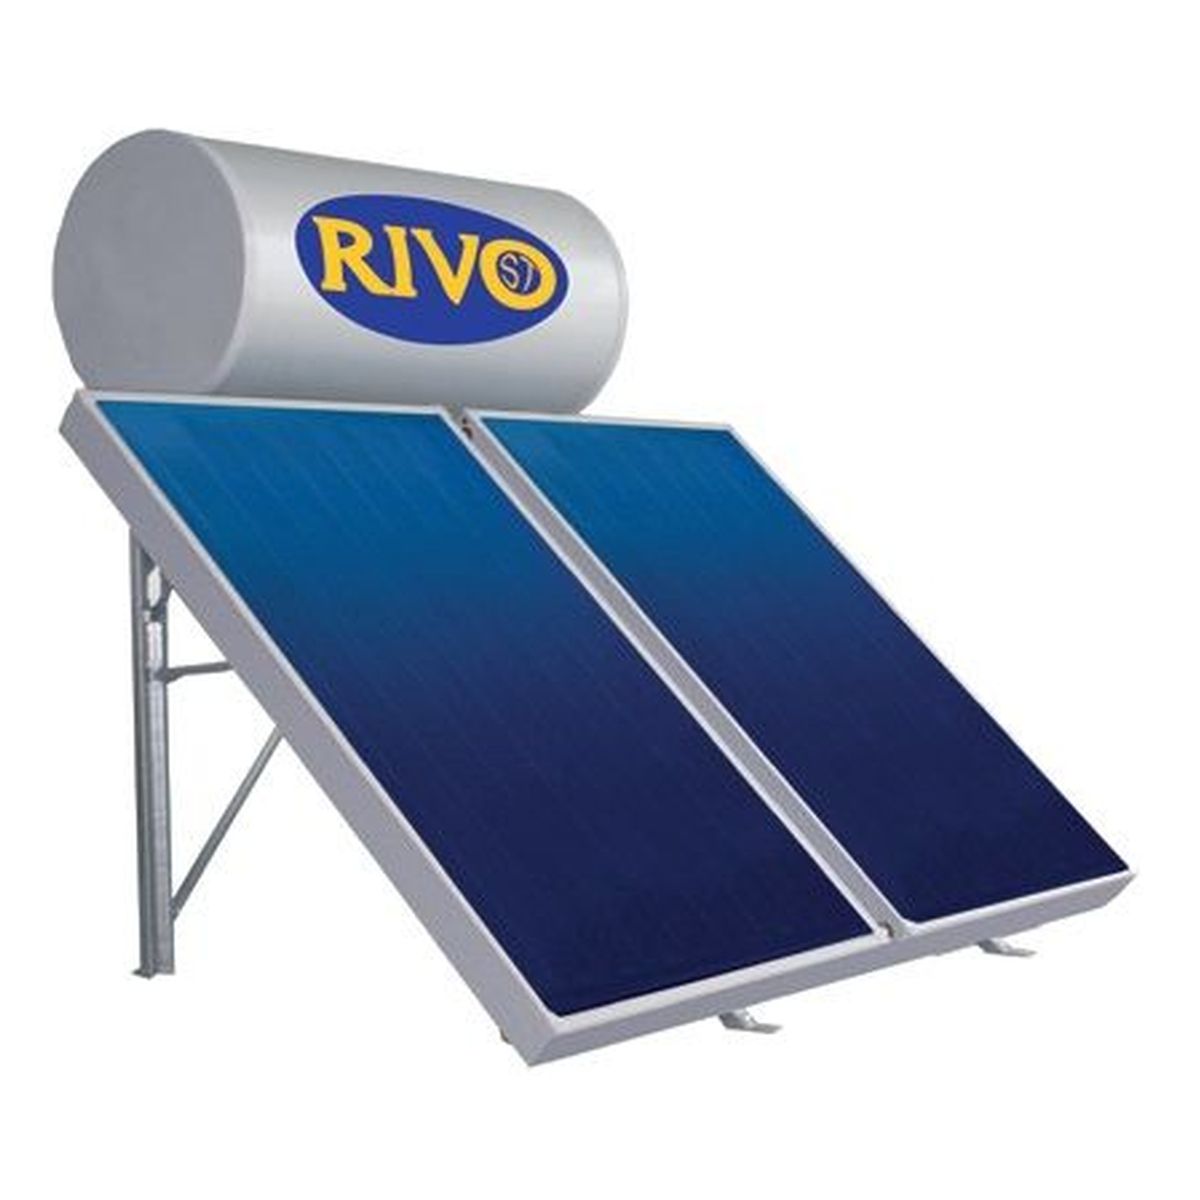 Ηλιακός Glass ΙΙΙ STF150T 2x1.5m2 Χαμηλός Ταράτσα 44.1.ΧΚ315030 RIVO ST